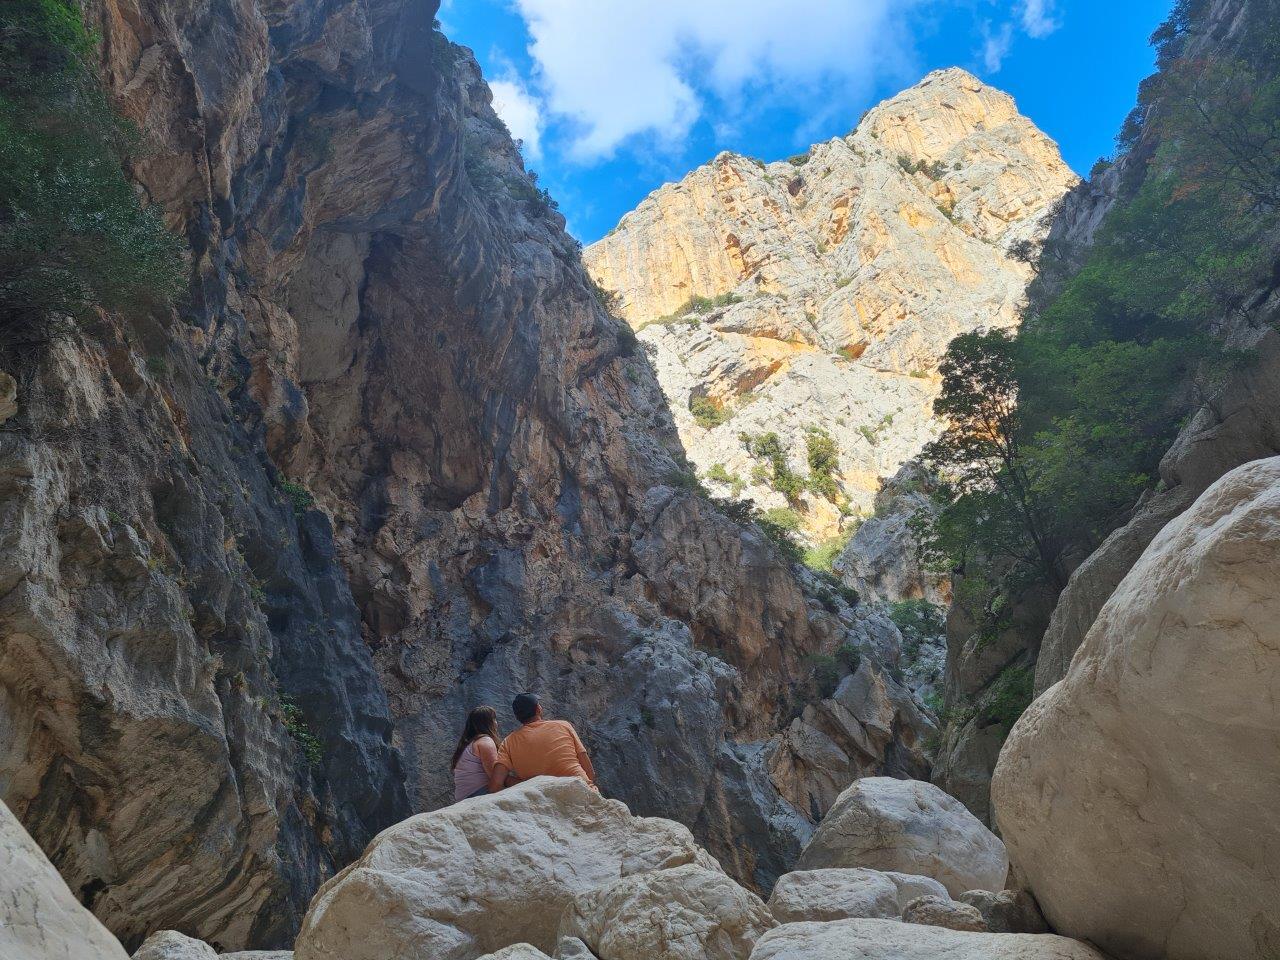 Hiken door Gola di Gorropu is een hoogtepunt van een vakantie in Sardinië